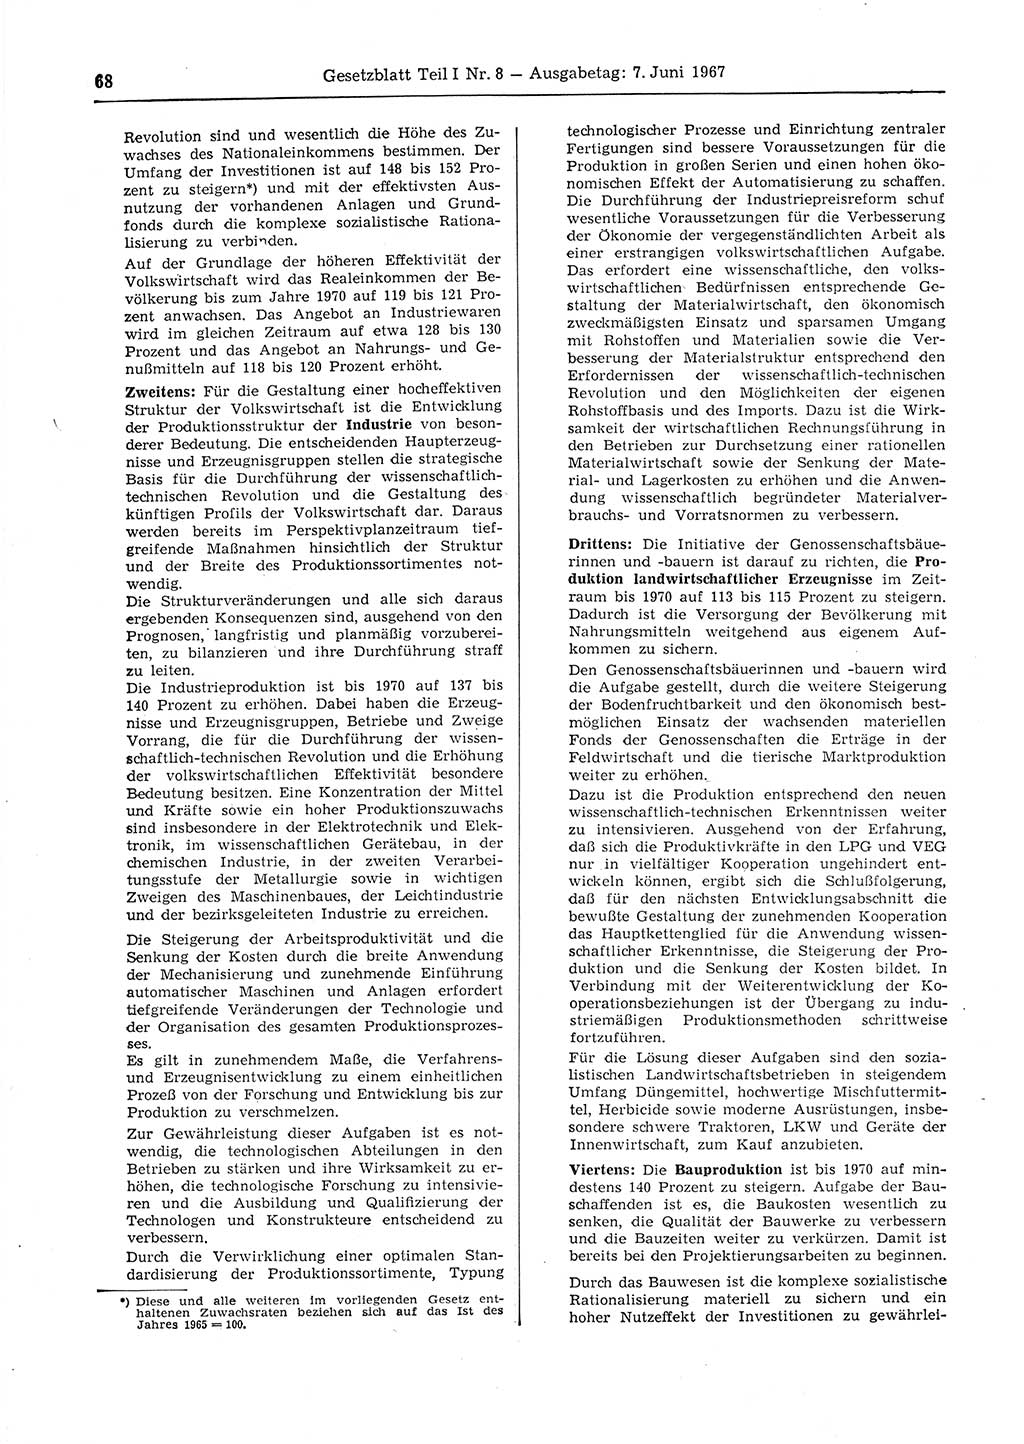 Gesetzblatt (GBl.) der Deutschen Demokratischen Republik (DDR) Teil Ⅰ 1967, Seite 68 (GBl. DDR Ⅰ 1967, S. 68)